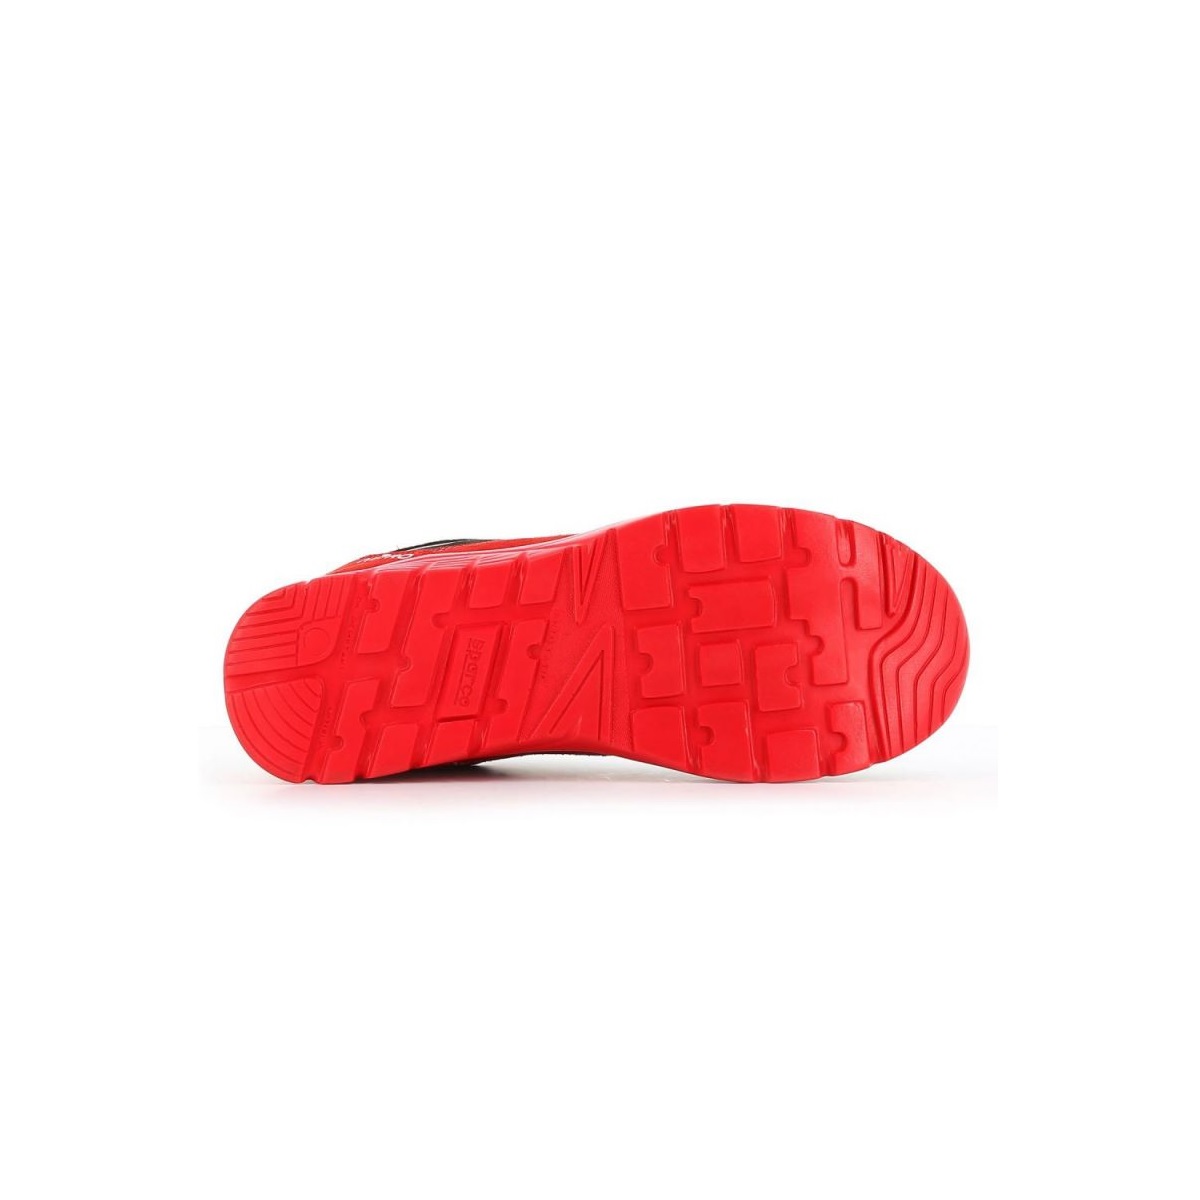 Zapatos de seguridad Sparco NITRO S3 SRC para hombre y mujer, calzado  ultraligero para correr, estilo en microfibra, ante hydro, negro y rojo -  AliExpress